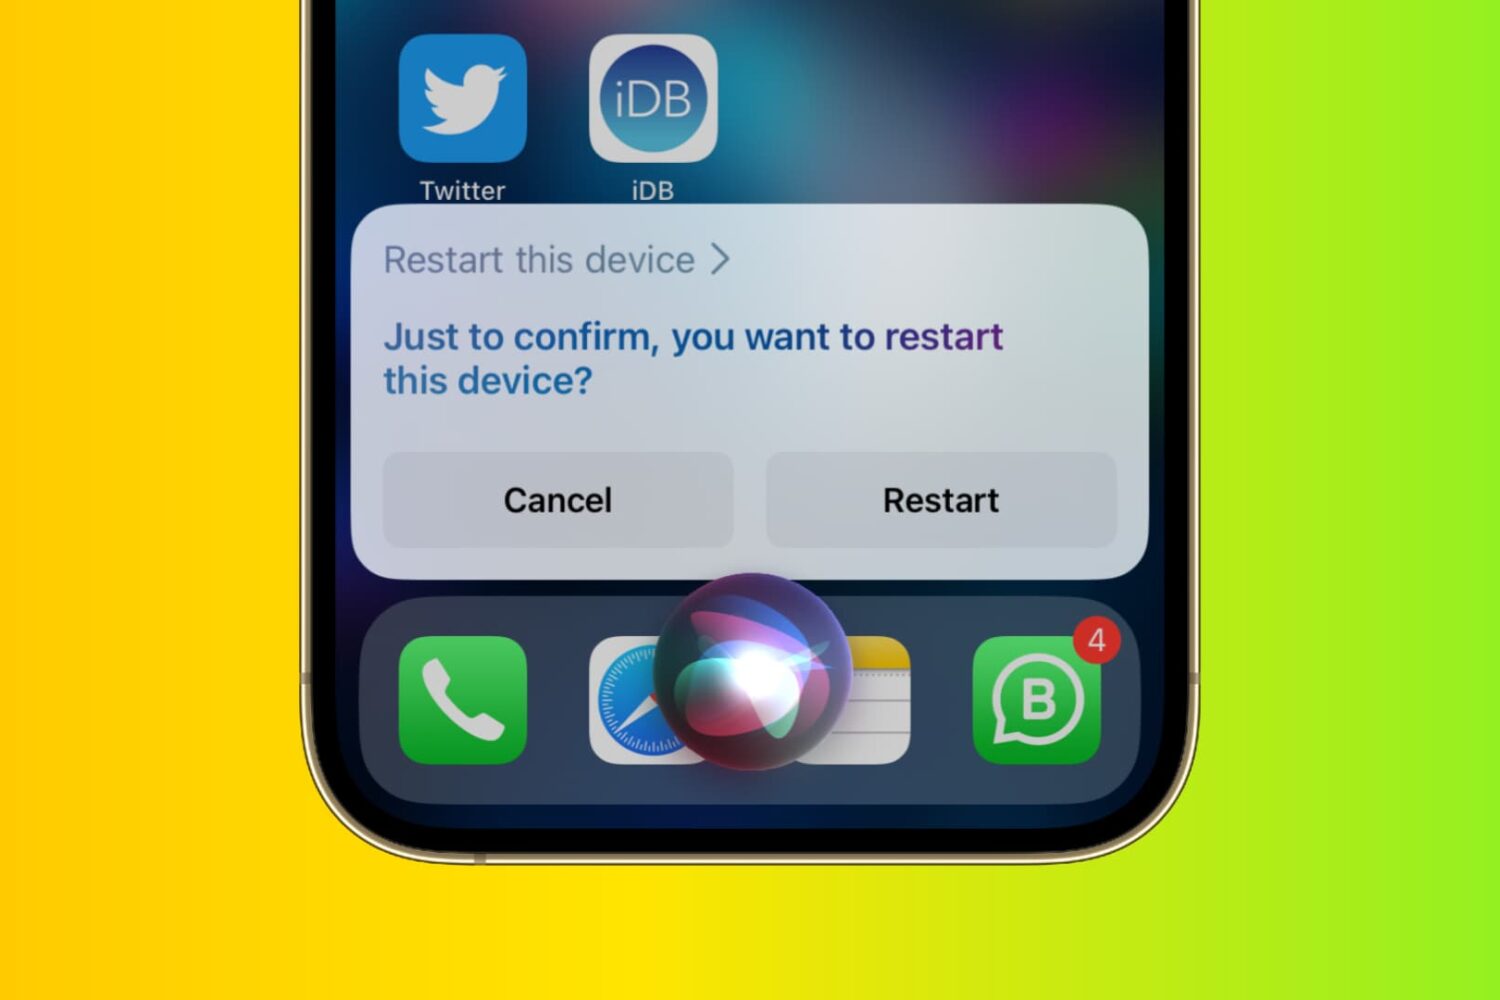 Restart iPhone using Siri